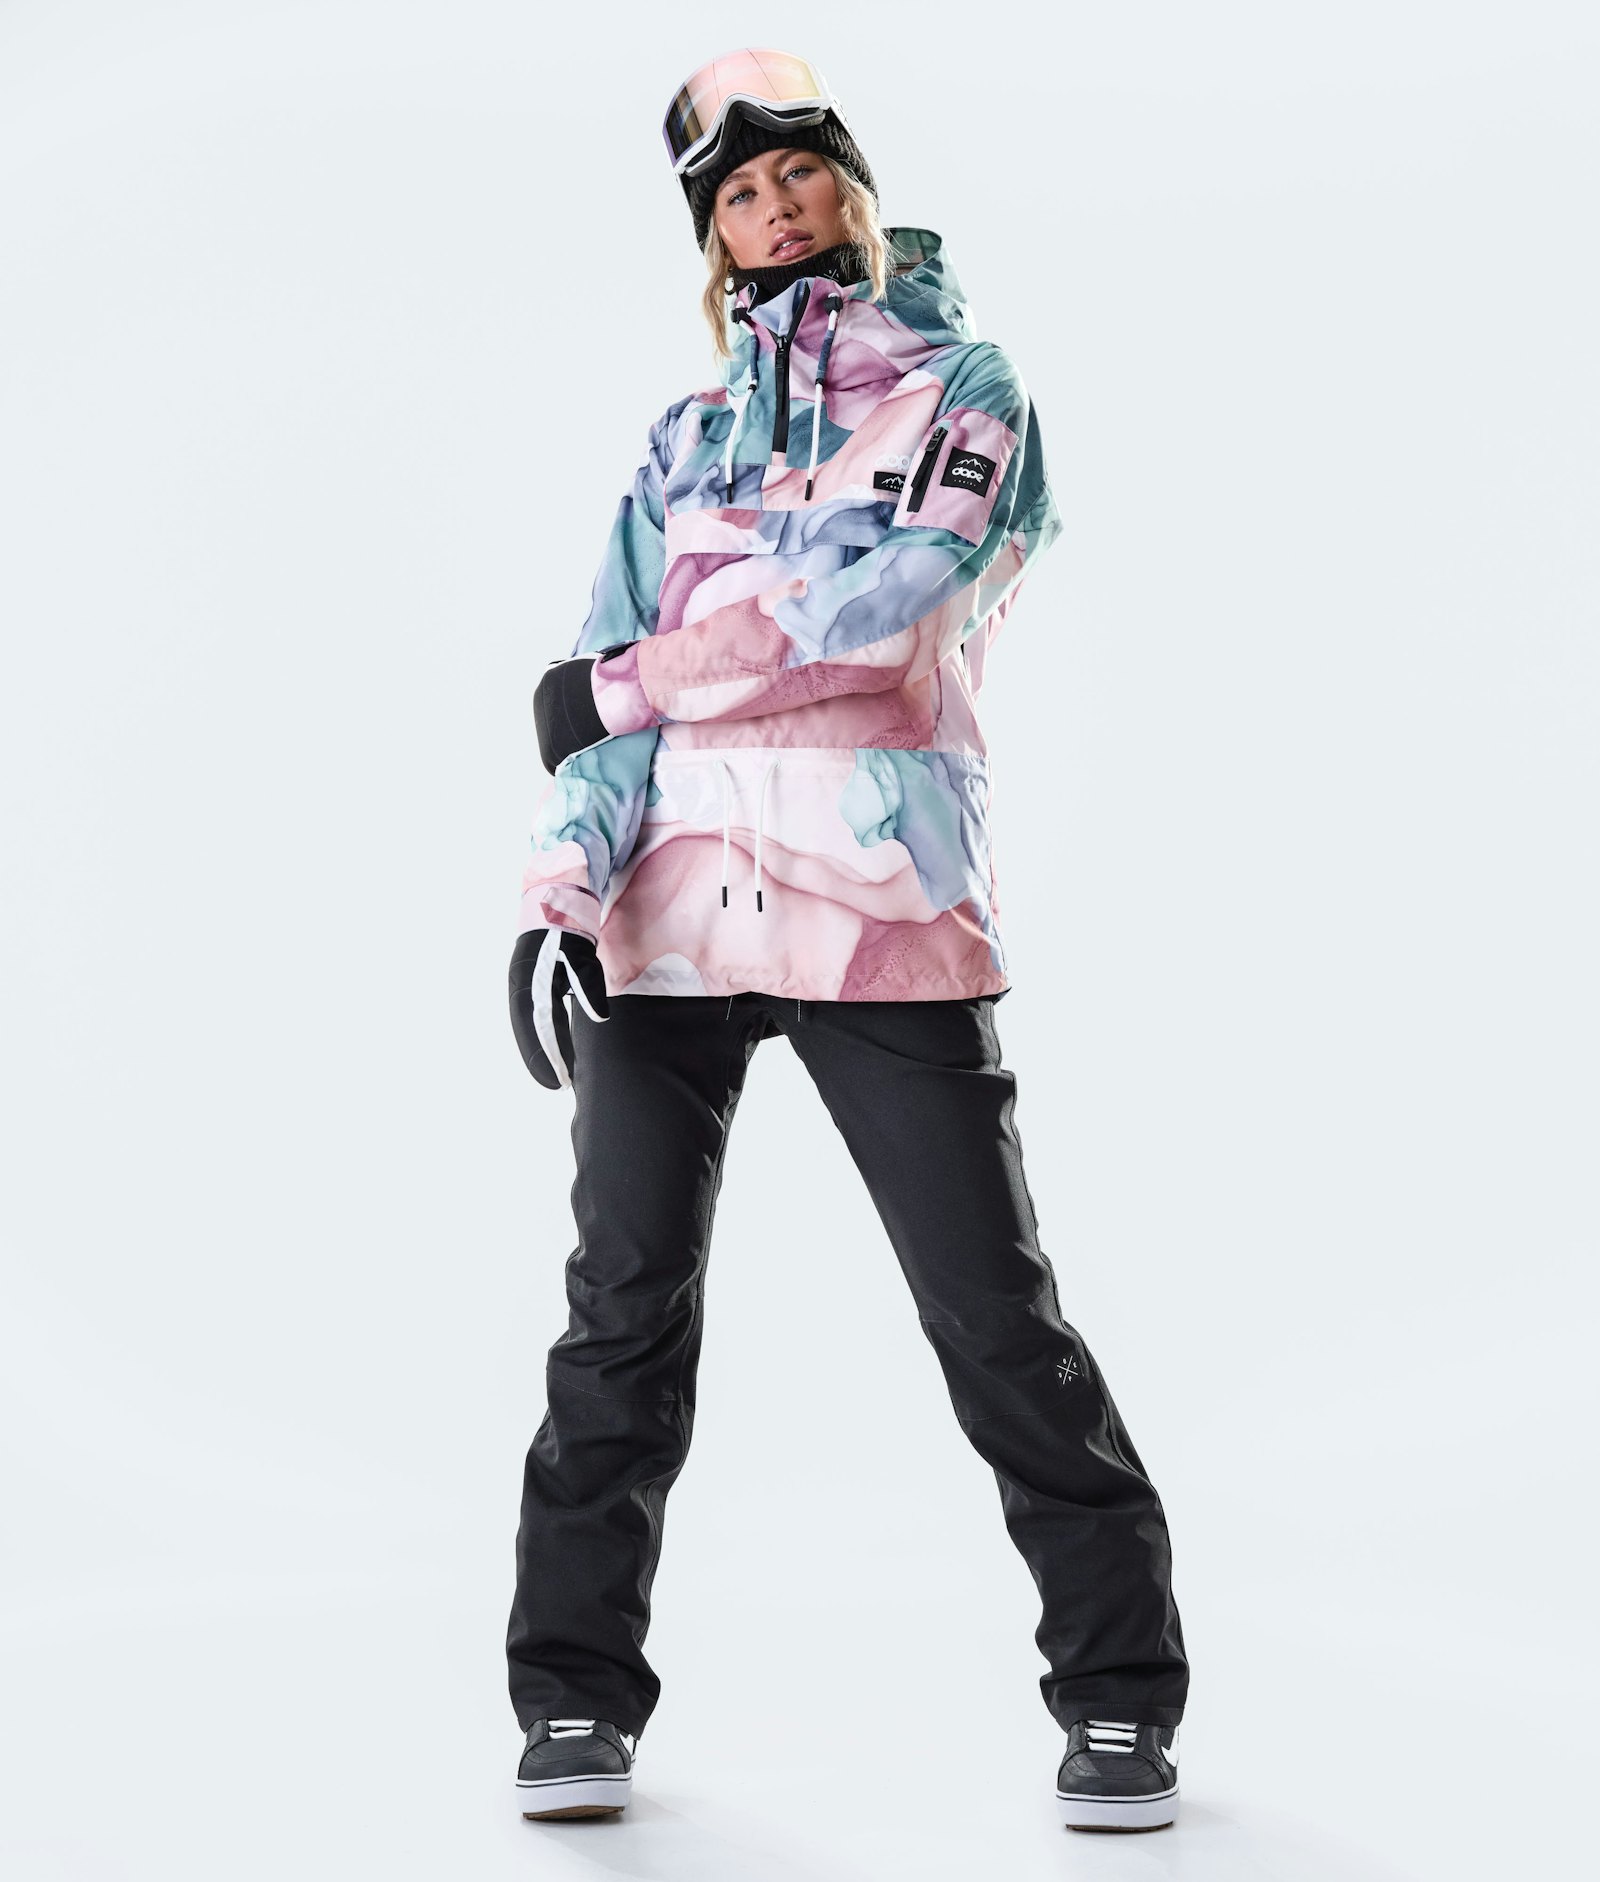 Annok W 2020 Veste Snowboard Femme Mirage